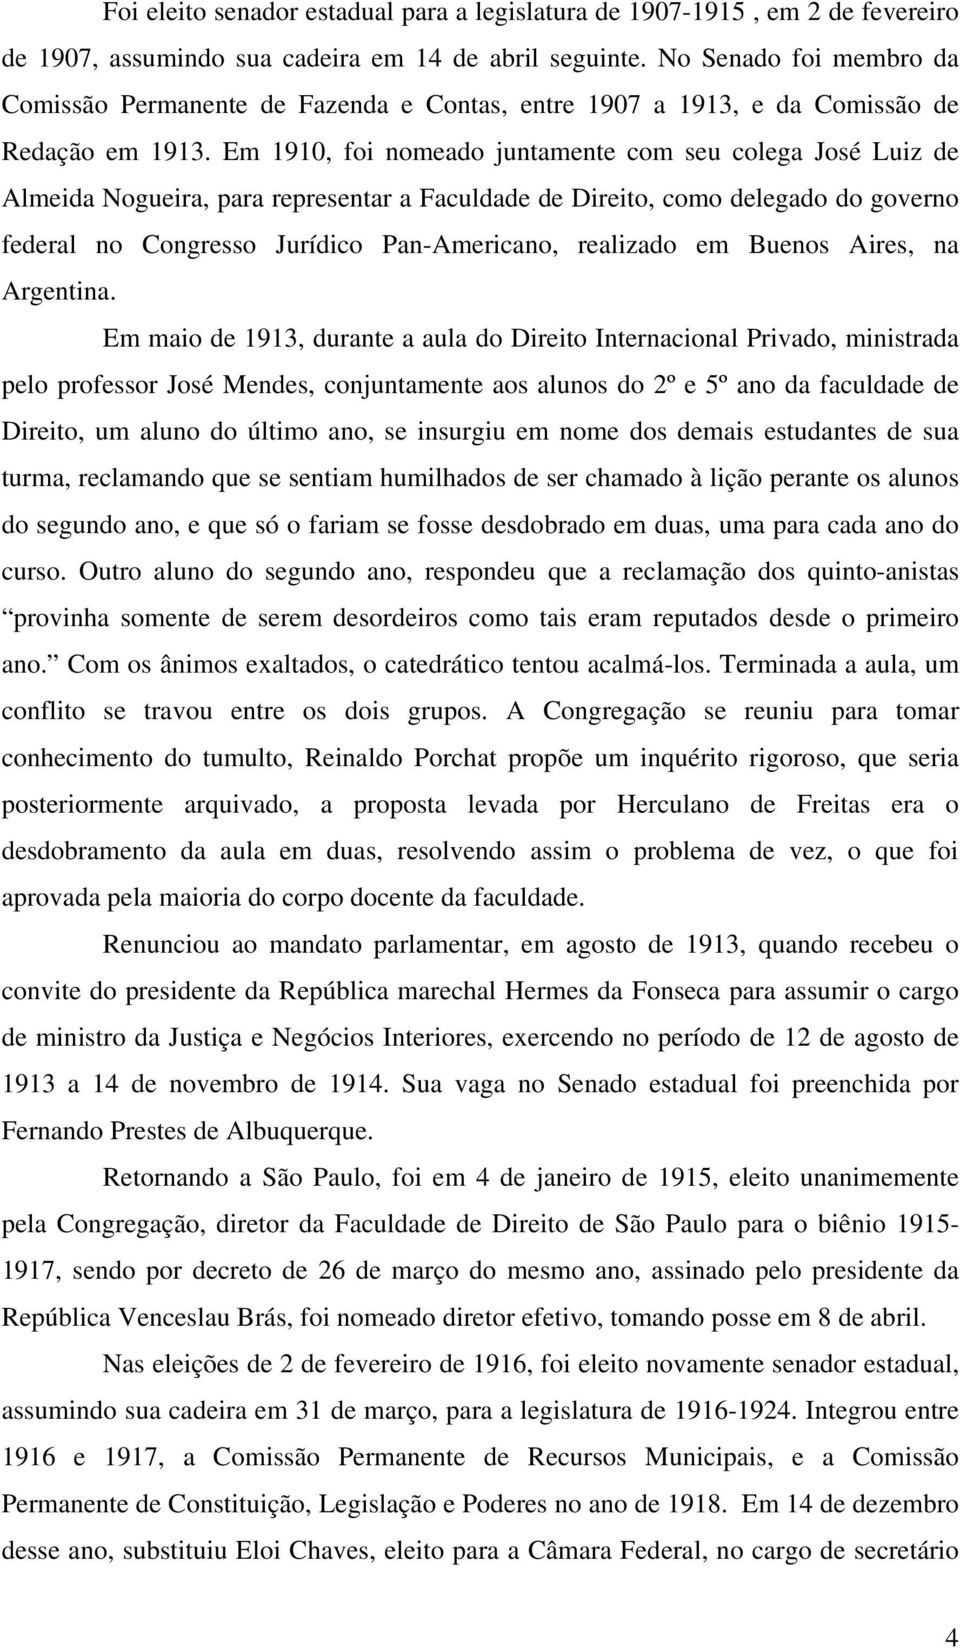 Em 1910, foi nomeado juntamente com seu colega José Luiz de Almeida Nogueira, para representar a Faculdade de Direito, como delegado do governo federal no Congresso Jurídico Pan-Americano, realizado